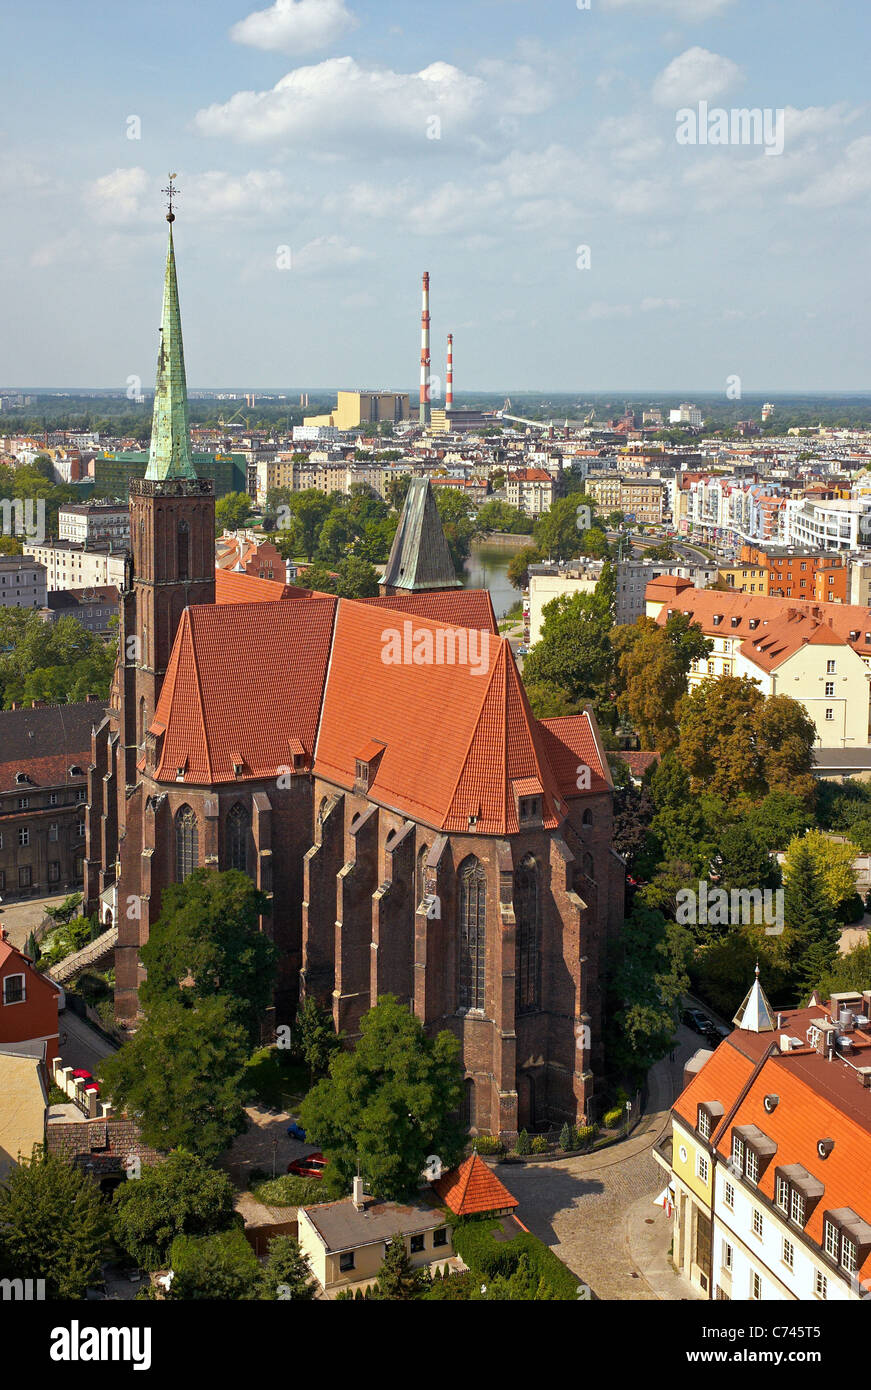 L'église de la Sainte Croix sur l'île de la cathédrale (Ostrow Tumski), Wroclaw, Pologne Banque D'Images